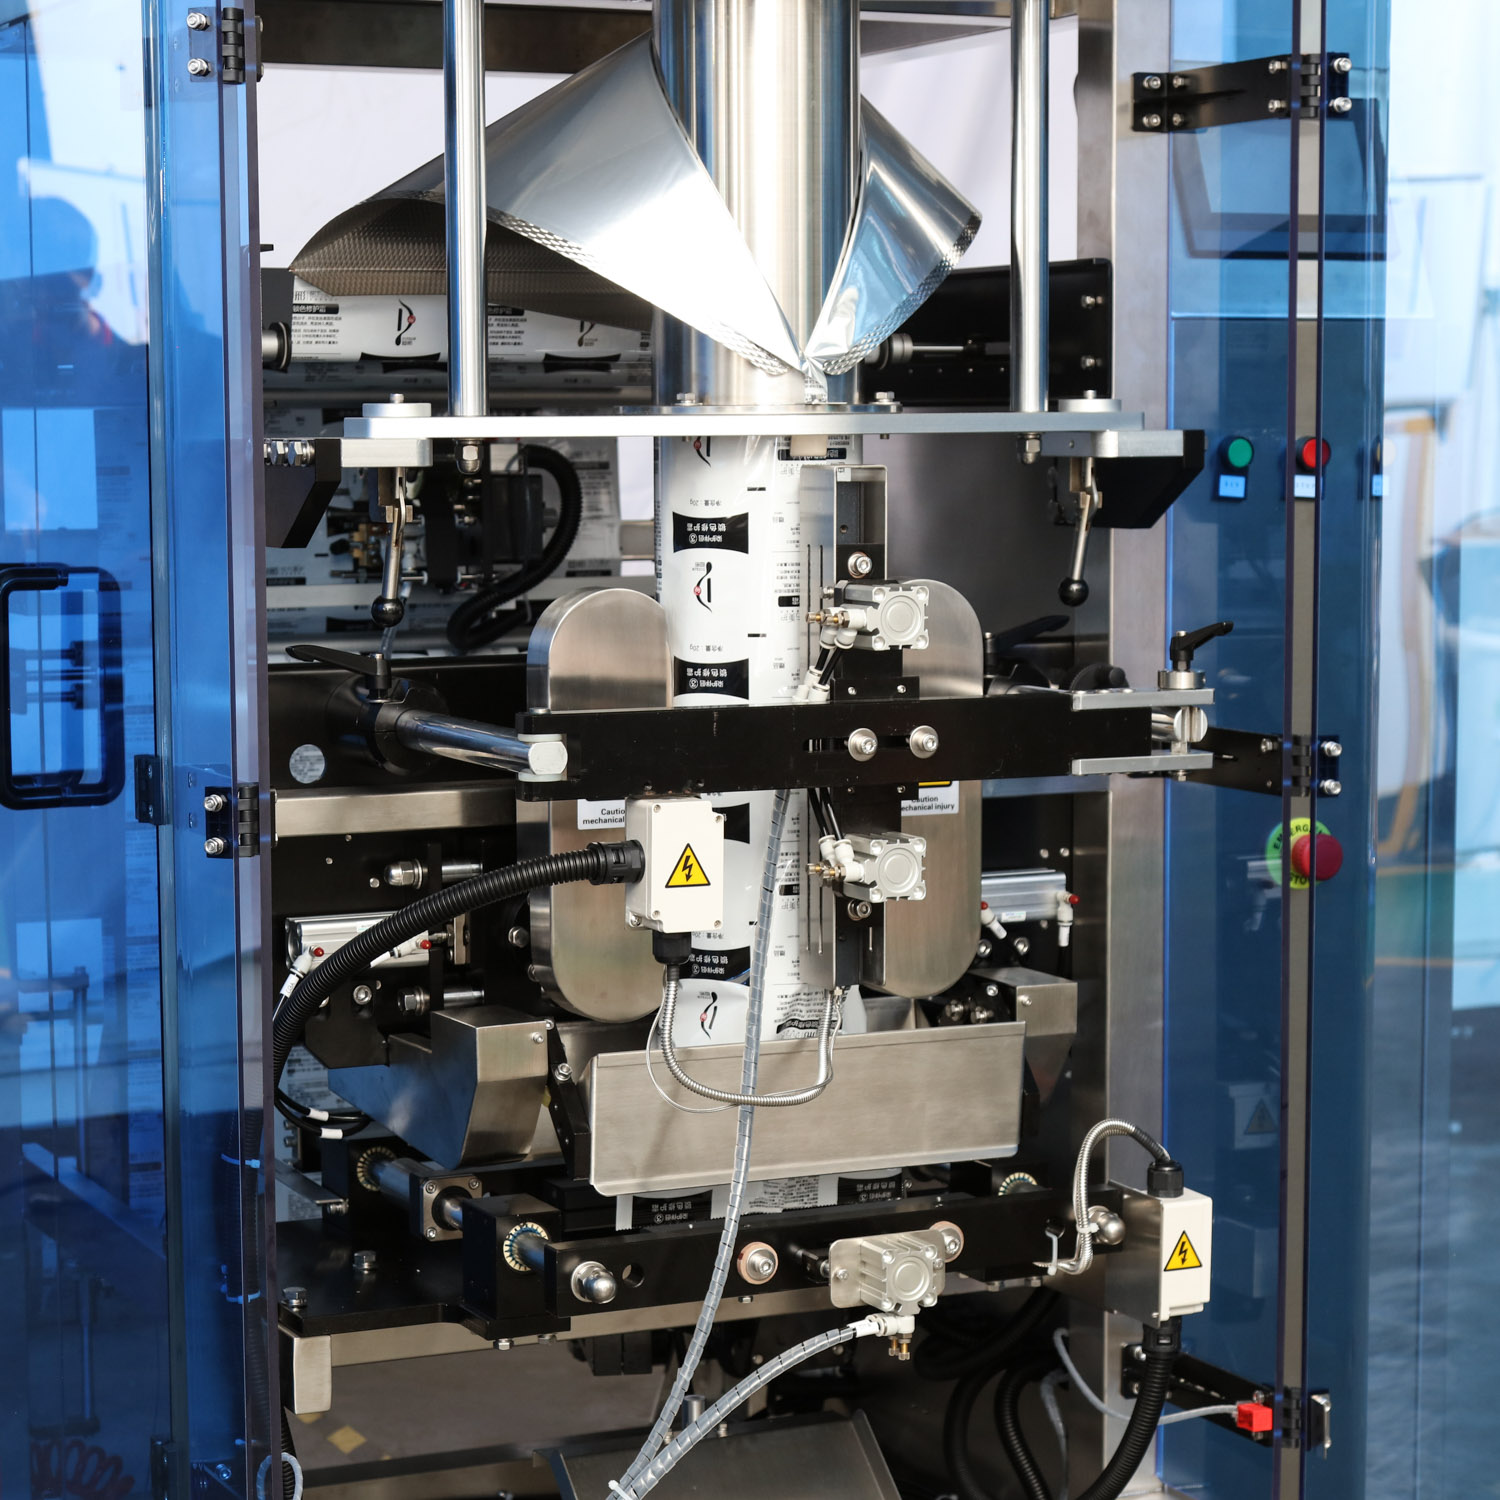 Máquina de envasado vertical automático tifuncional para bolsas de frijoles de chocolate